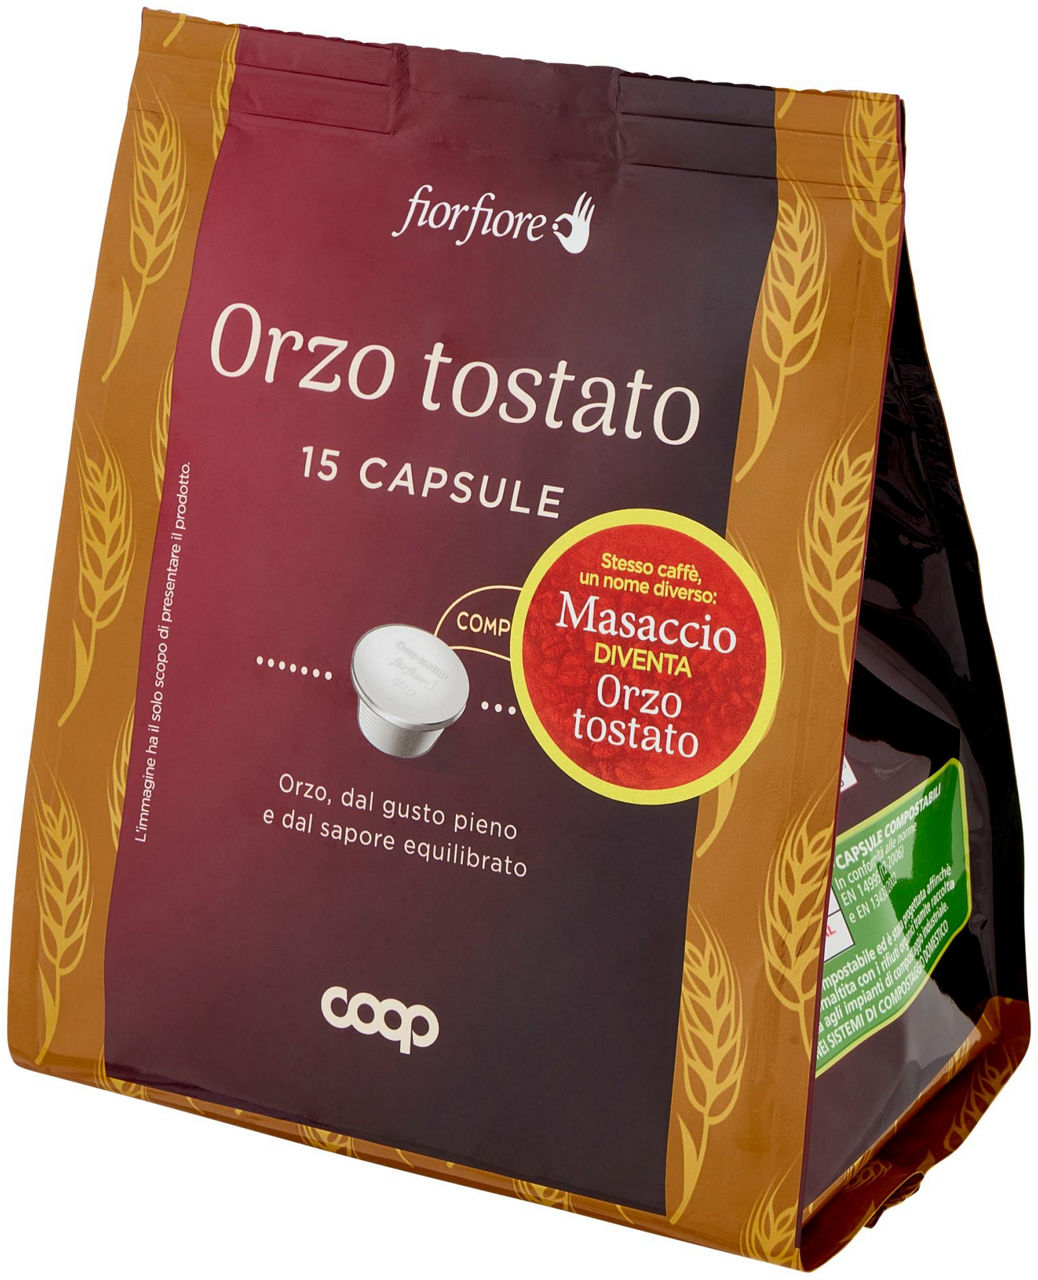 ORZO TOSTATO IN CAPSULE 'MASACCIO' FIOR FIORE COOP PZ. 15 SACCHETTO G 75 - 6